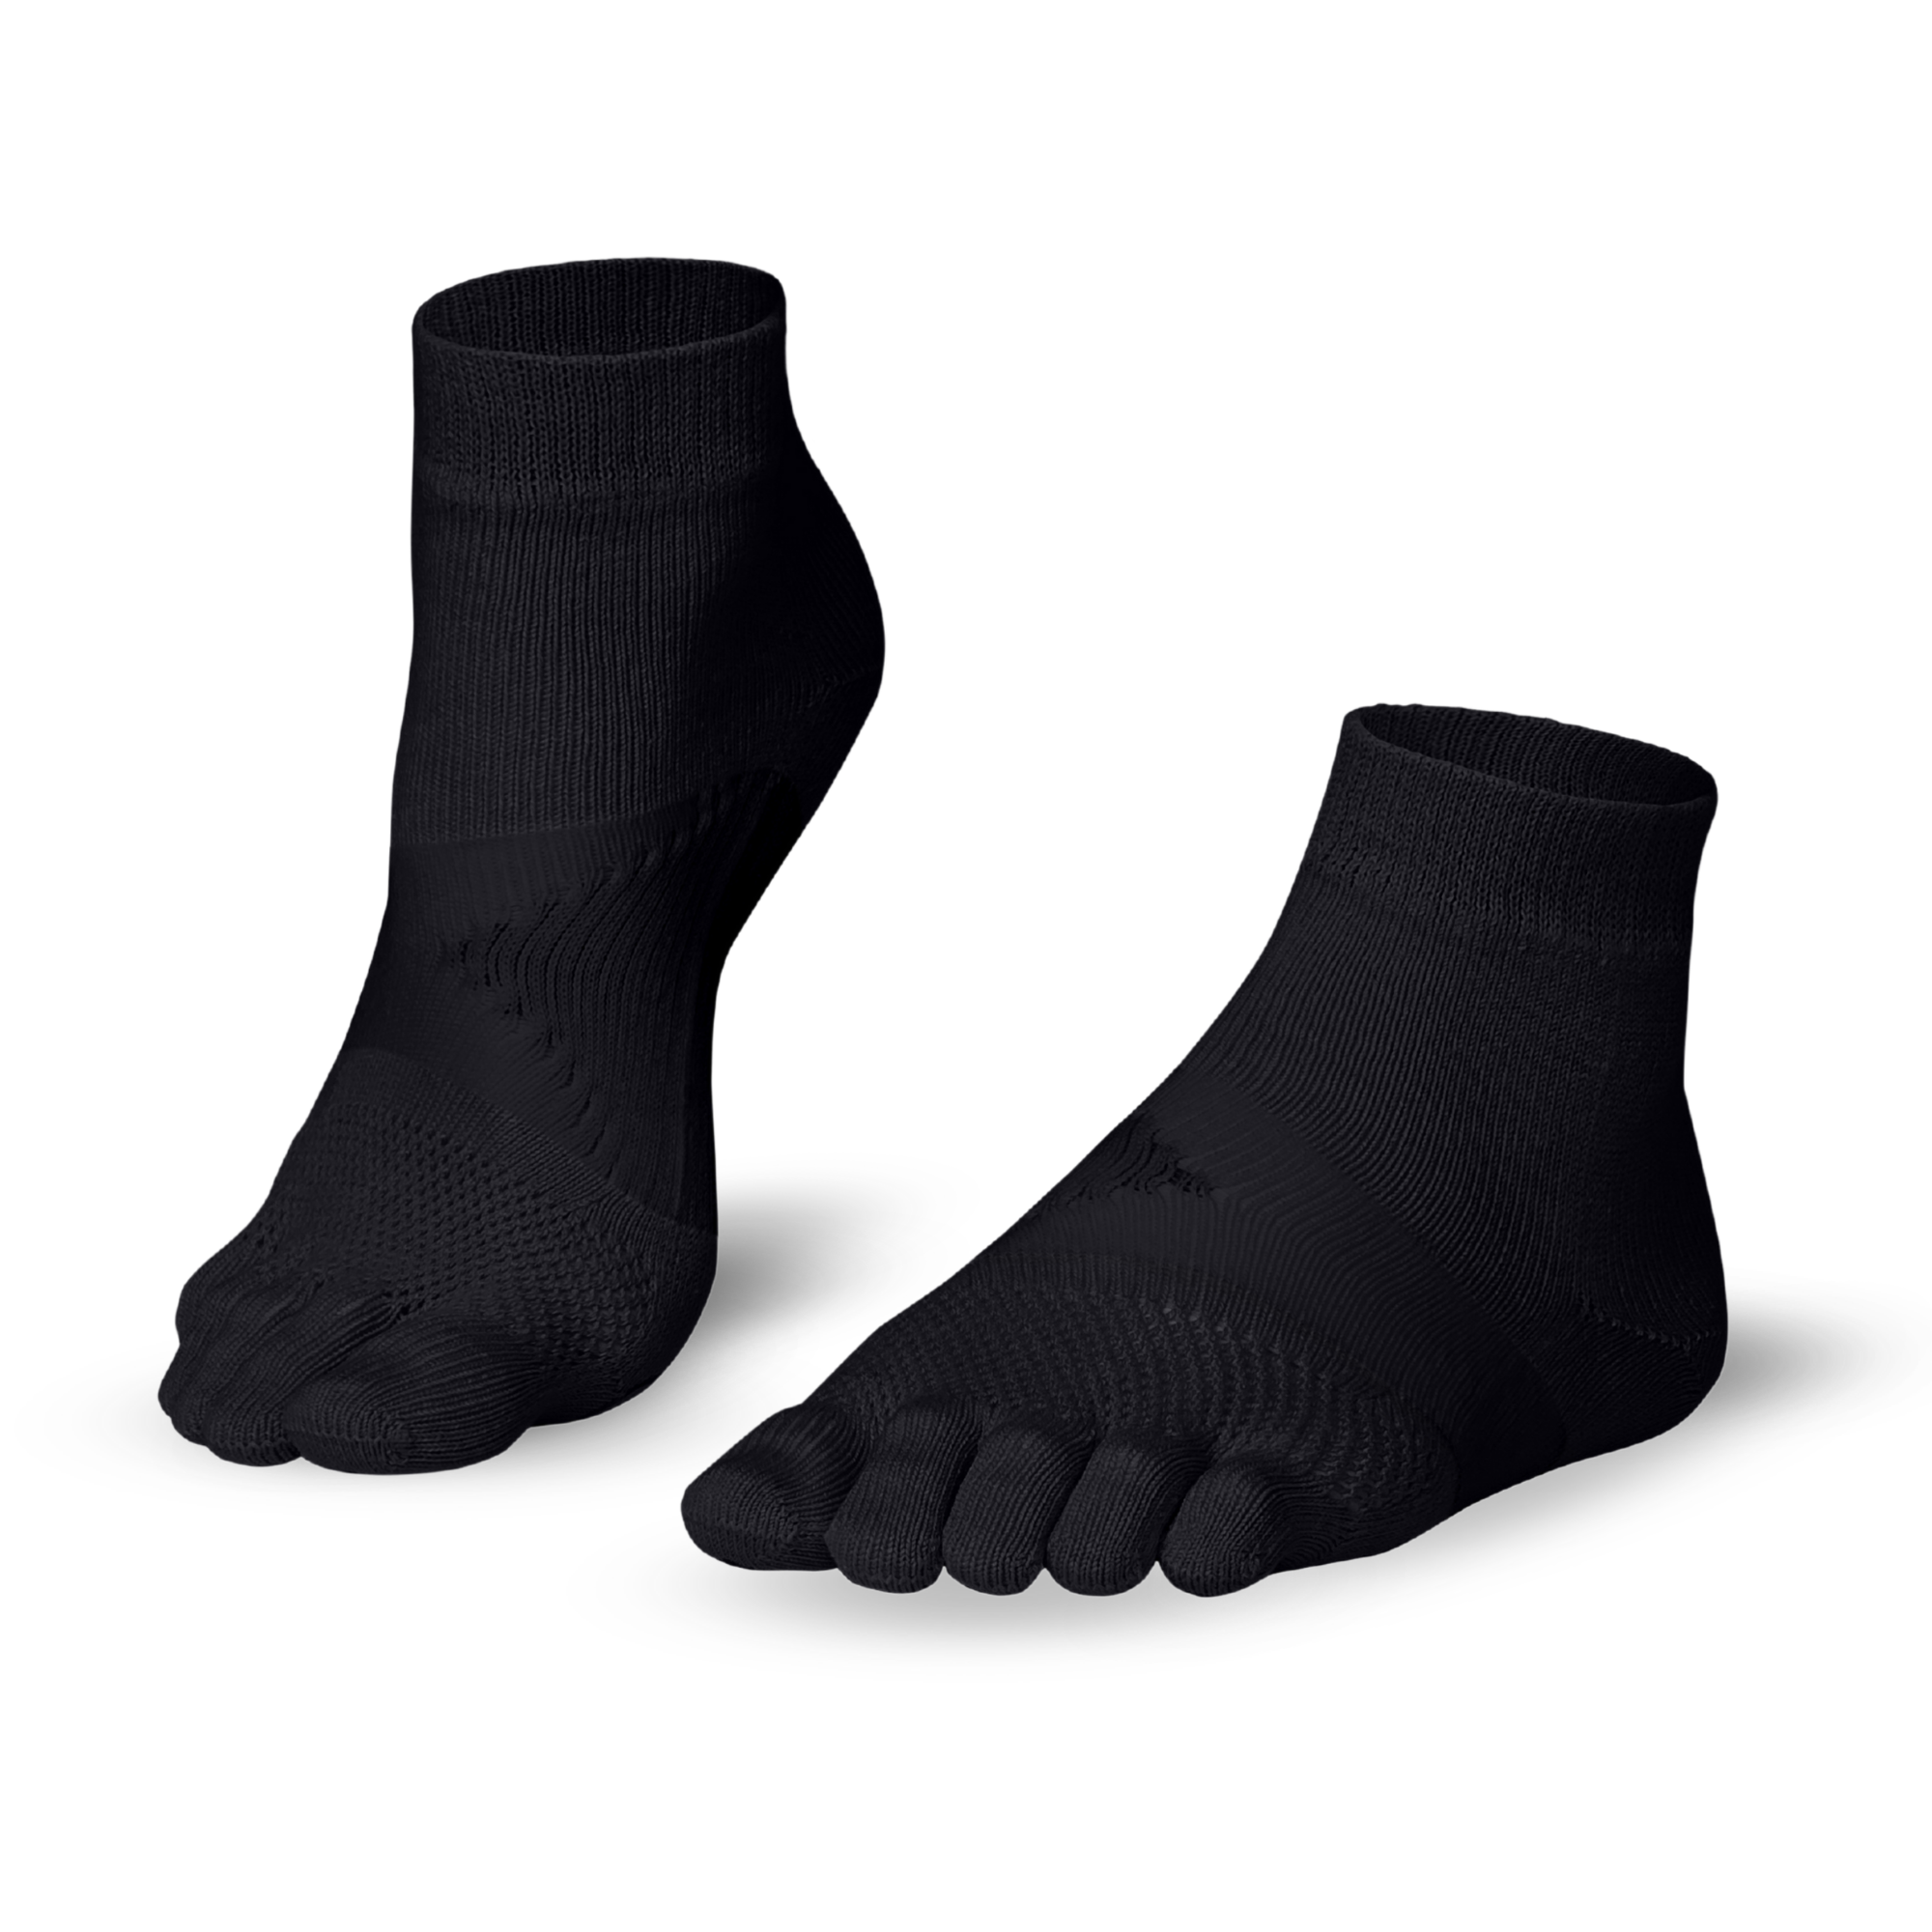 Running TS running toe socks - the essential running toe socks from Knitido : black